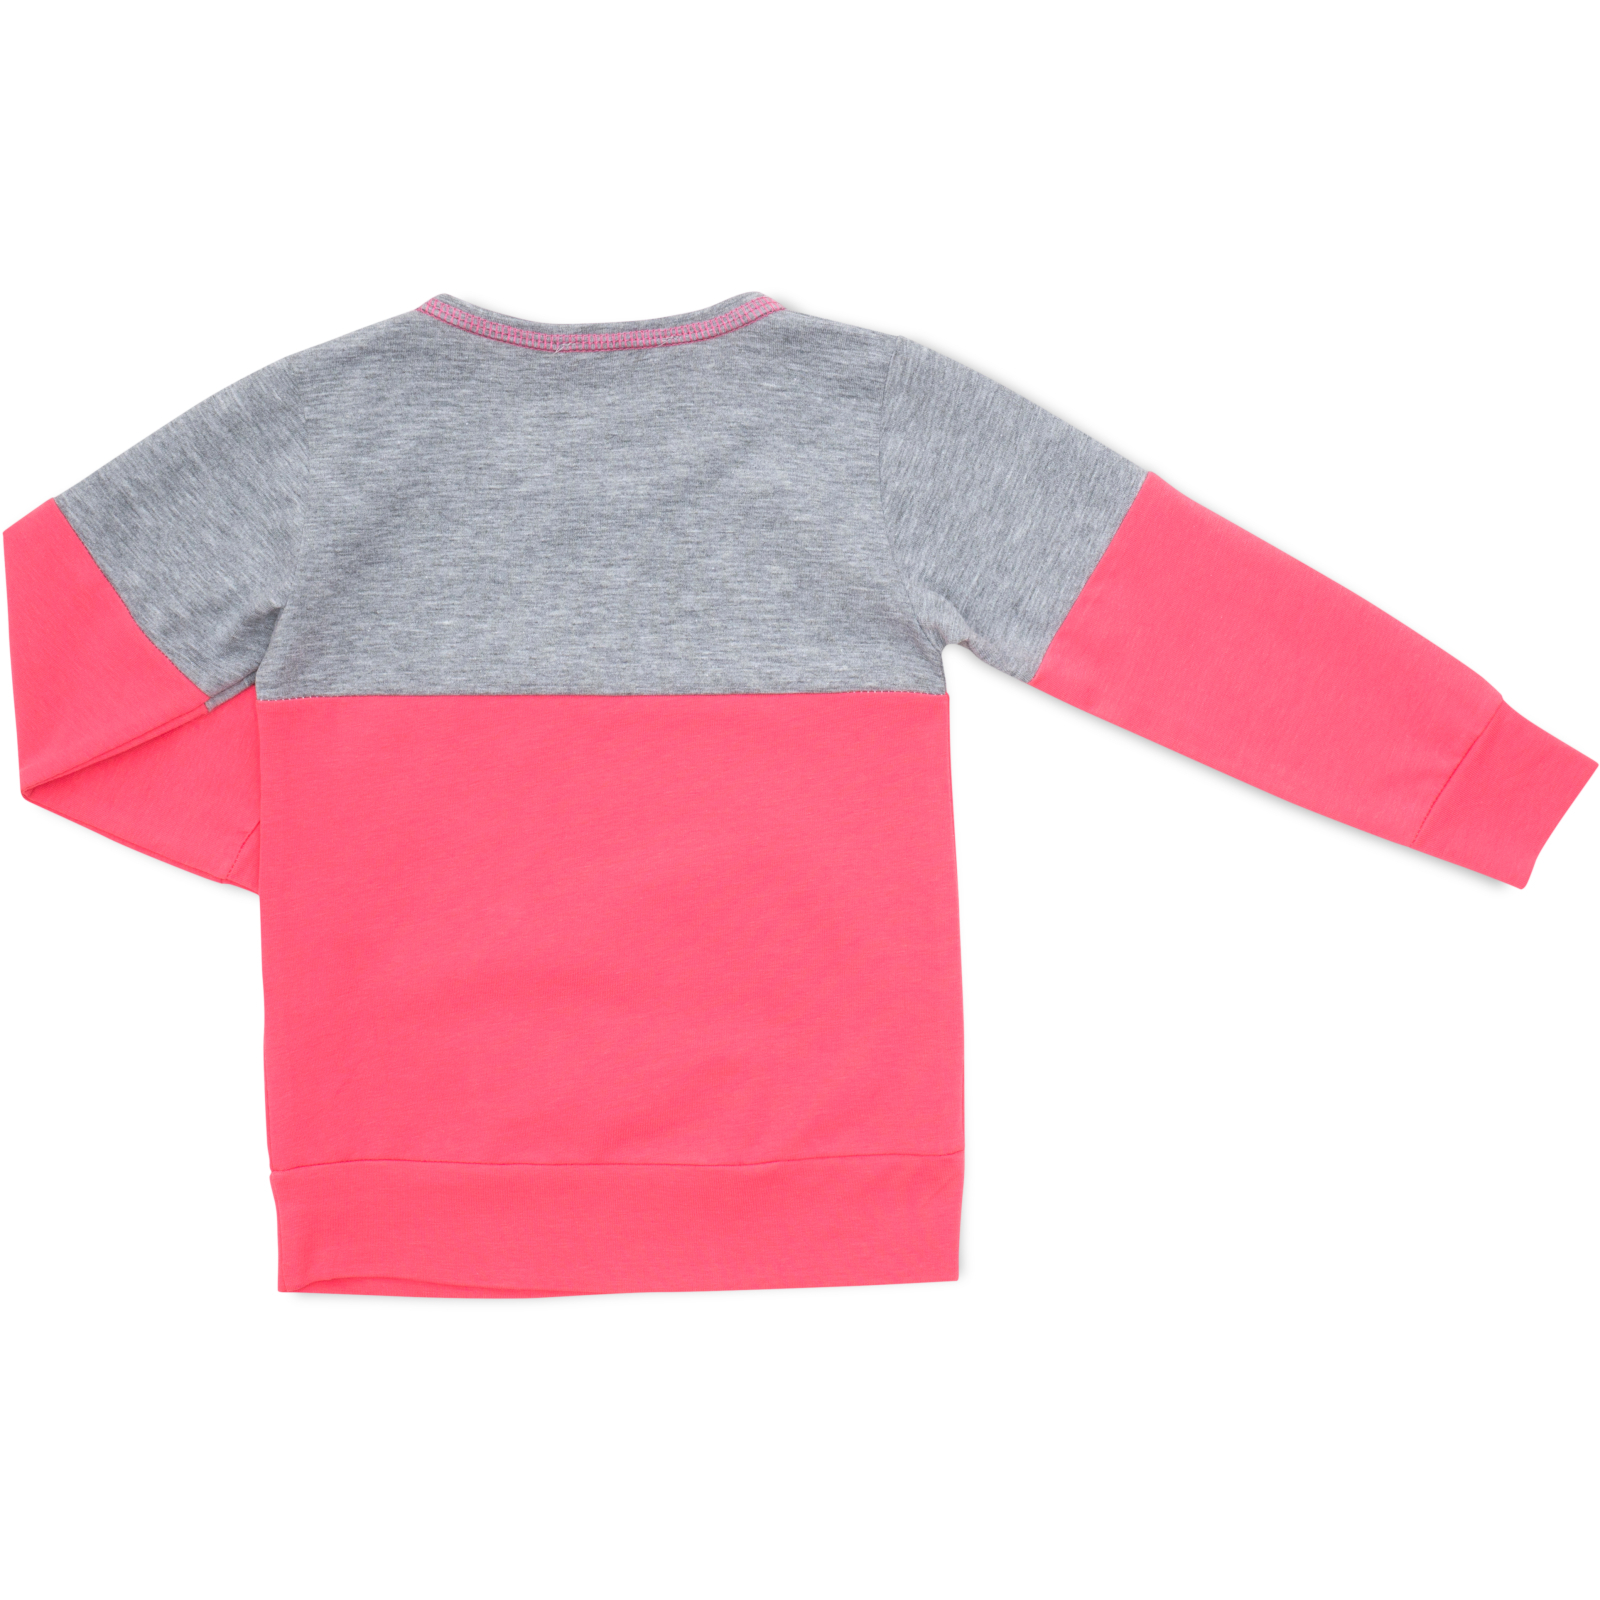 Пижама Matilda со звездочками (7167-128G-pink) изображение 5